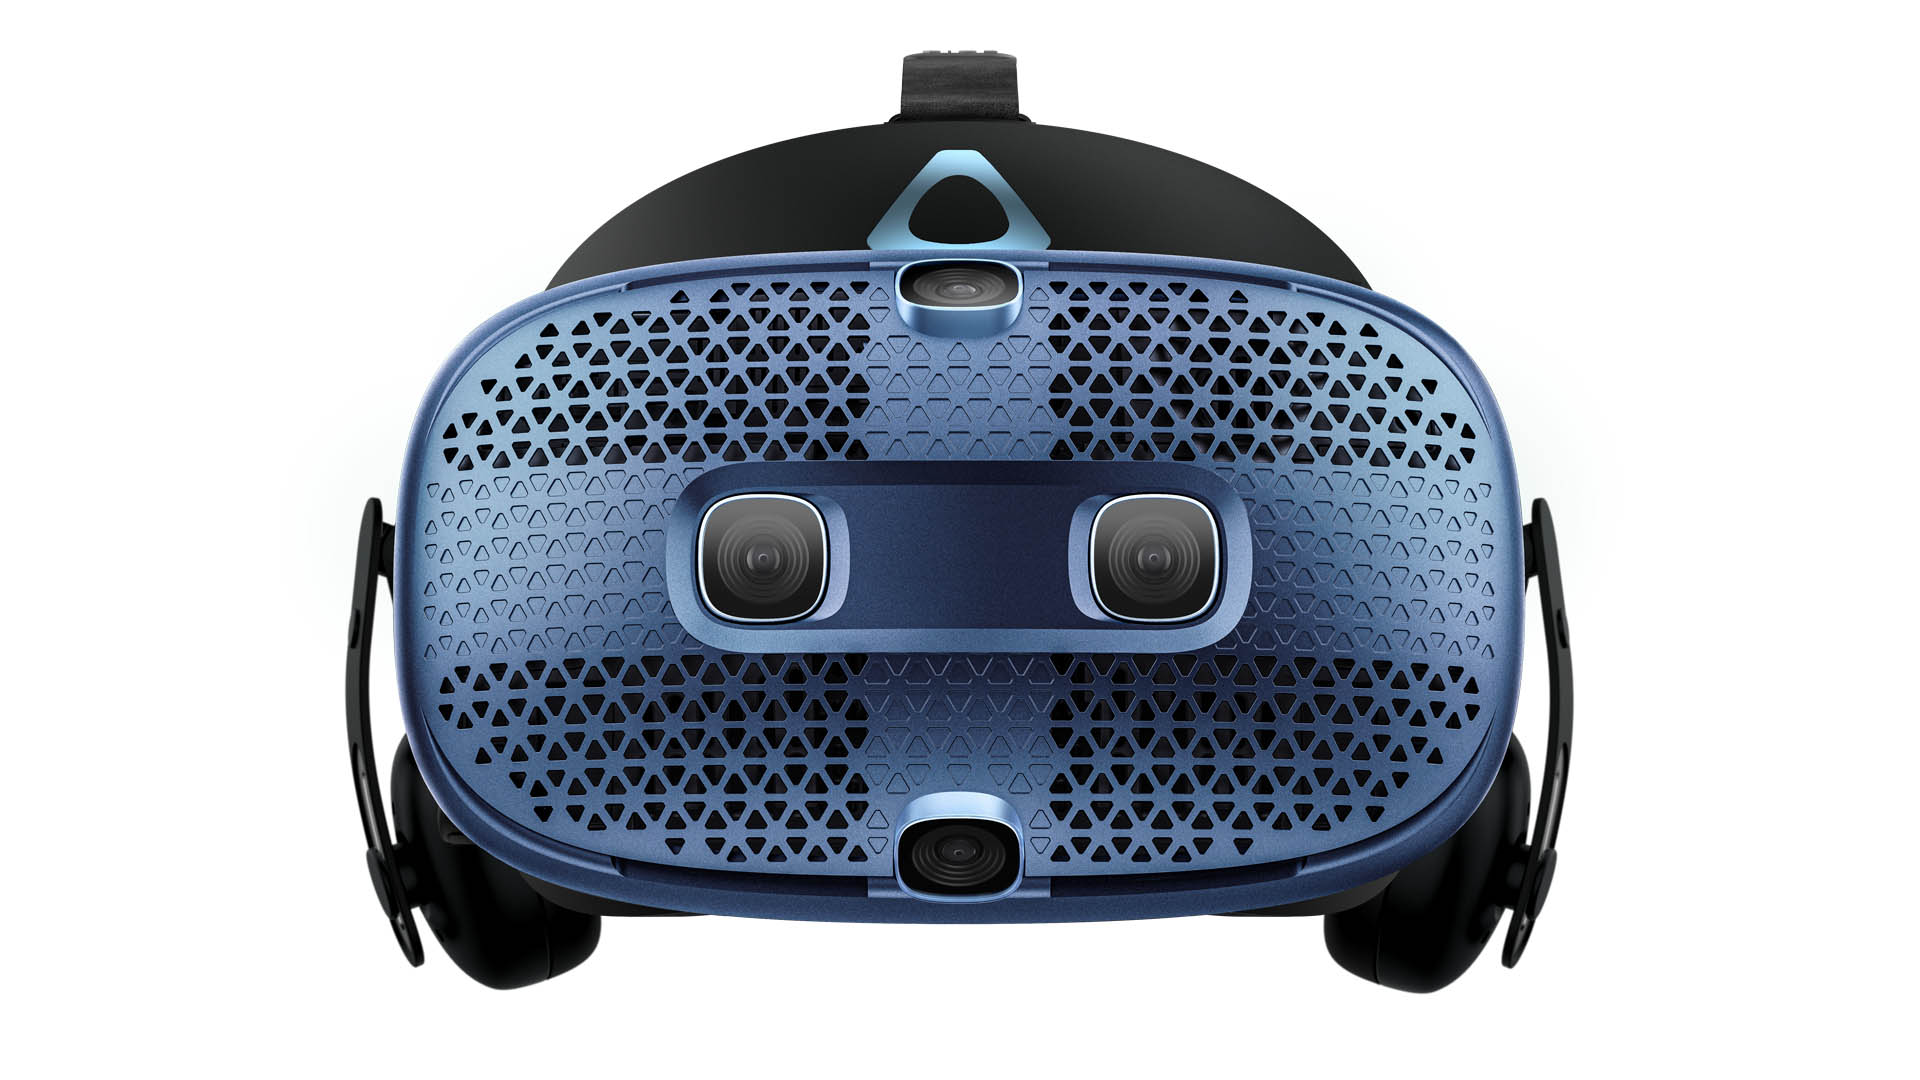 ادخل إلى الواقع الافتراضي "أسرع وأسهل من أي وقت مضى" مع نظام Vive Cosmos الجديد البالغ 699 دولارًا